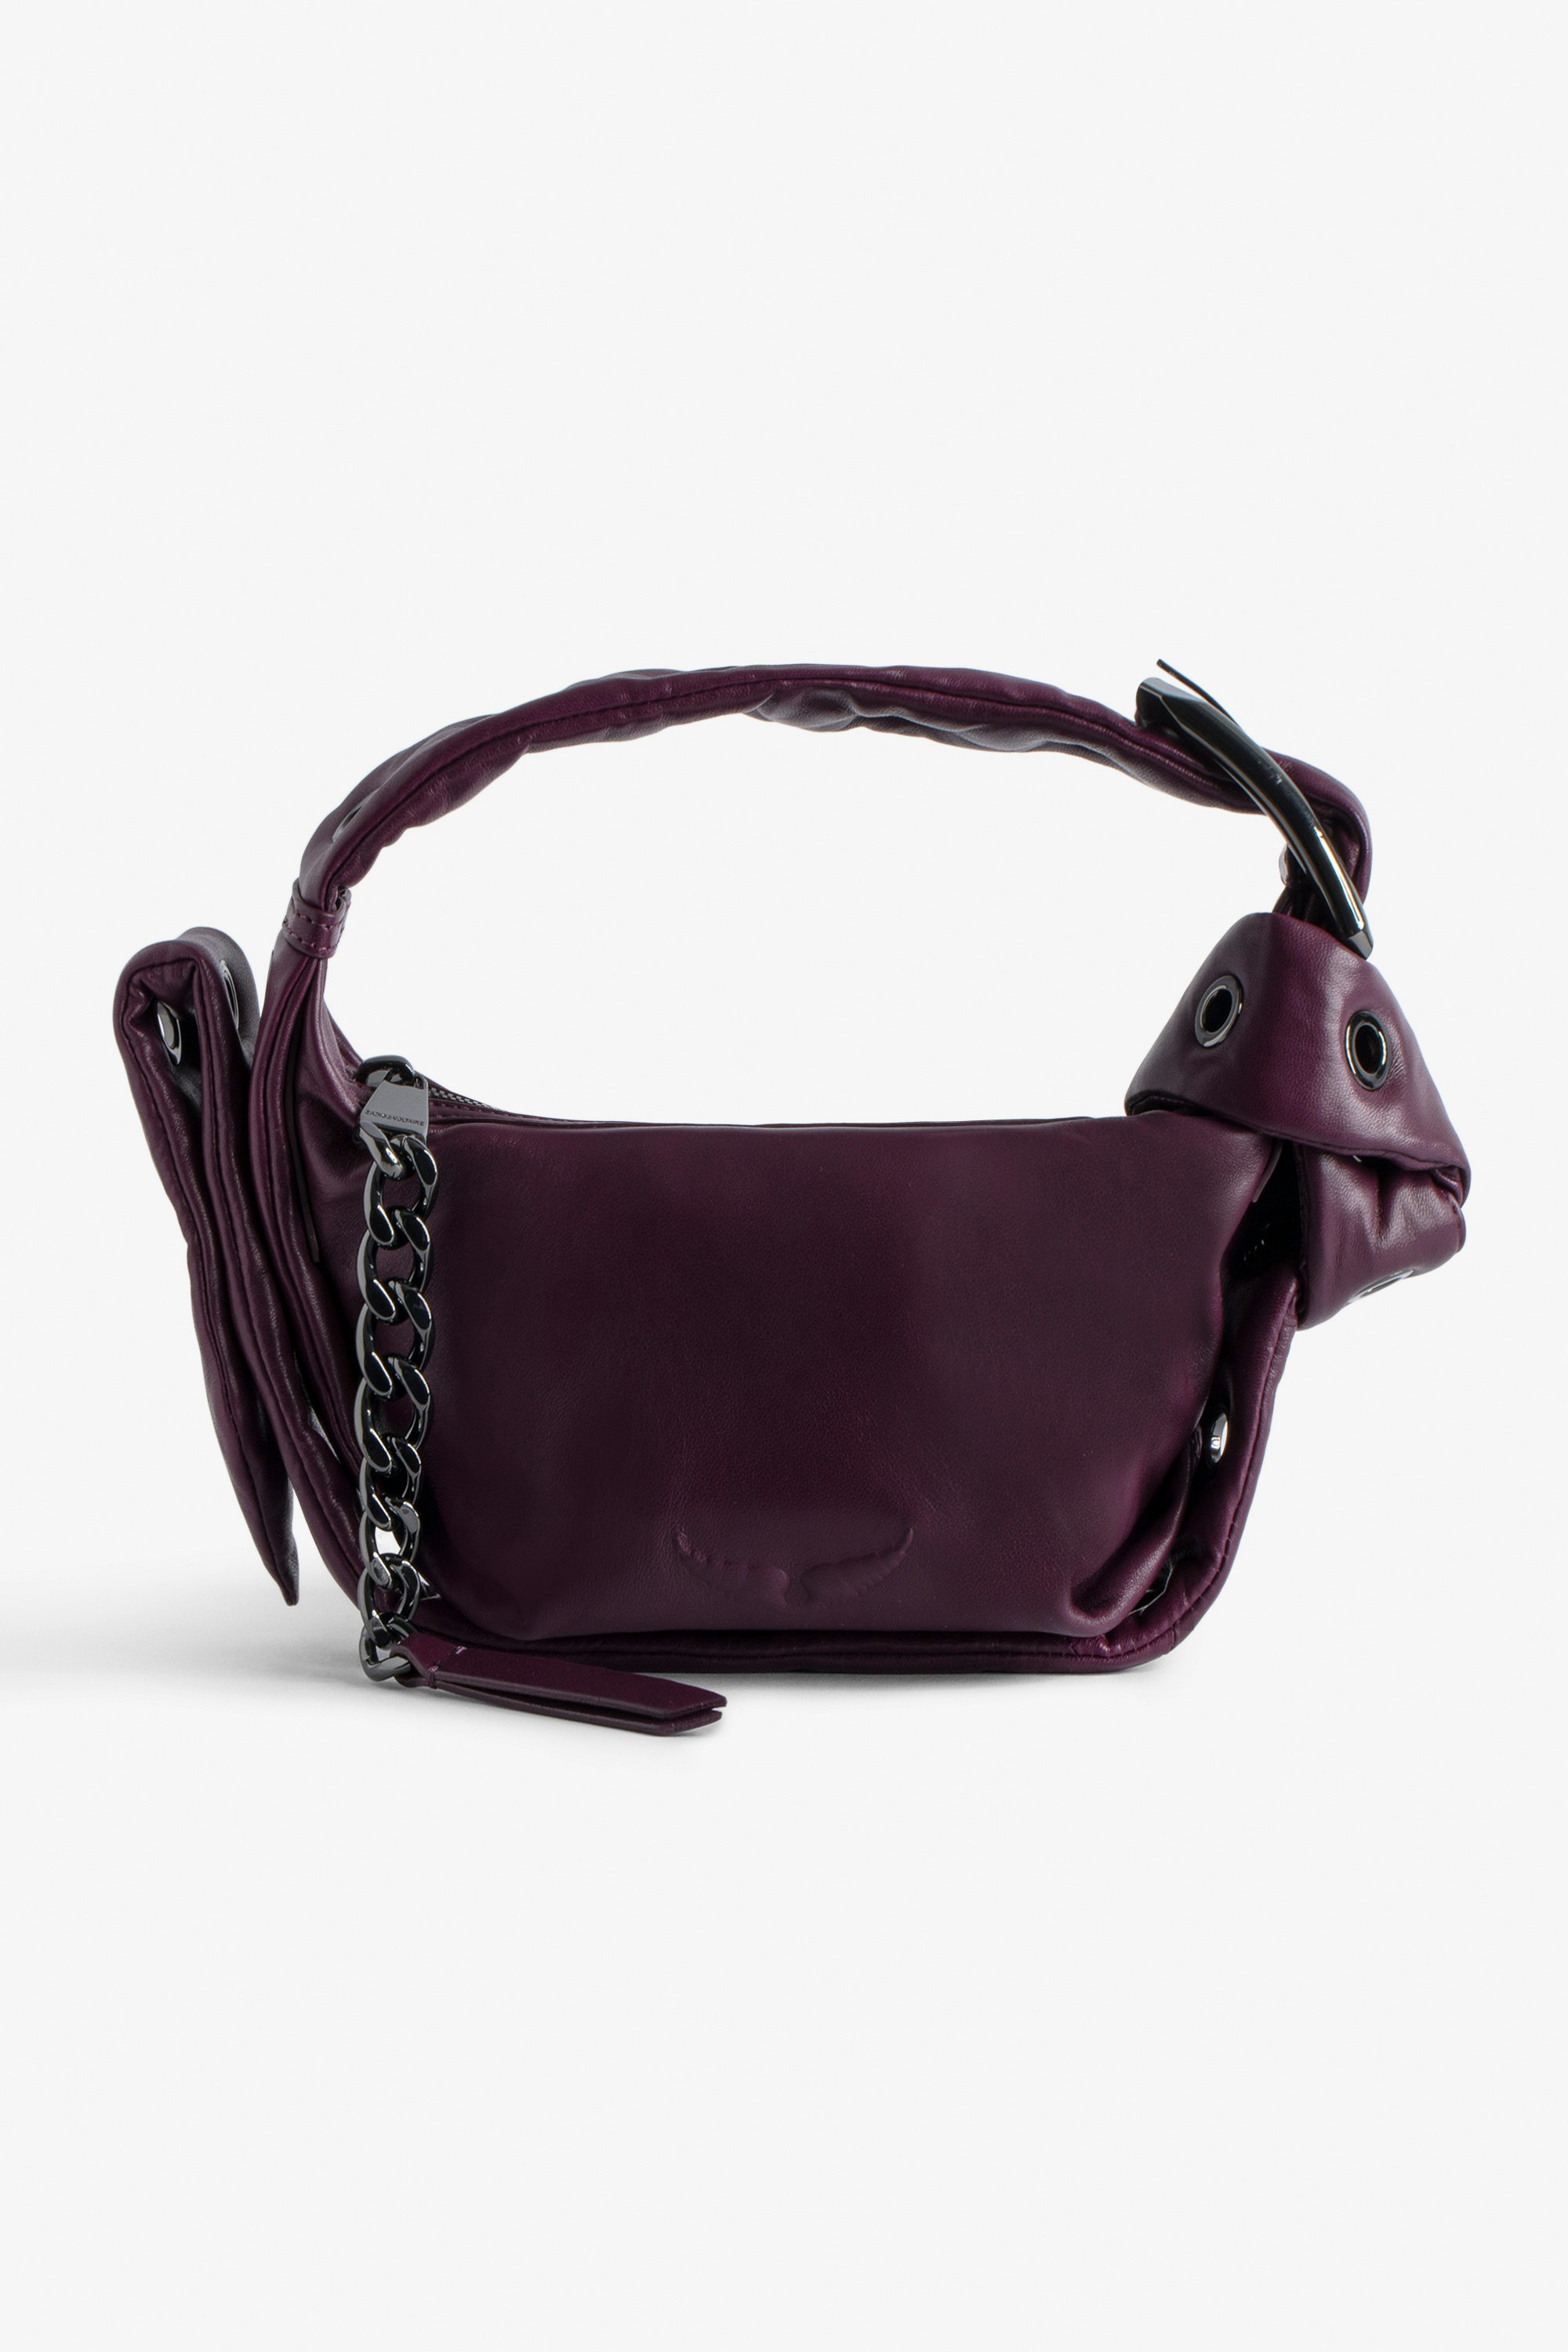 Borsa Le Cecilia XS Obsession - Piccola borsa in pelle liscia bordeaux con tracolla e fibbia in metallo a C da donna.